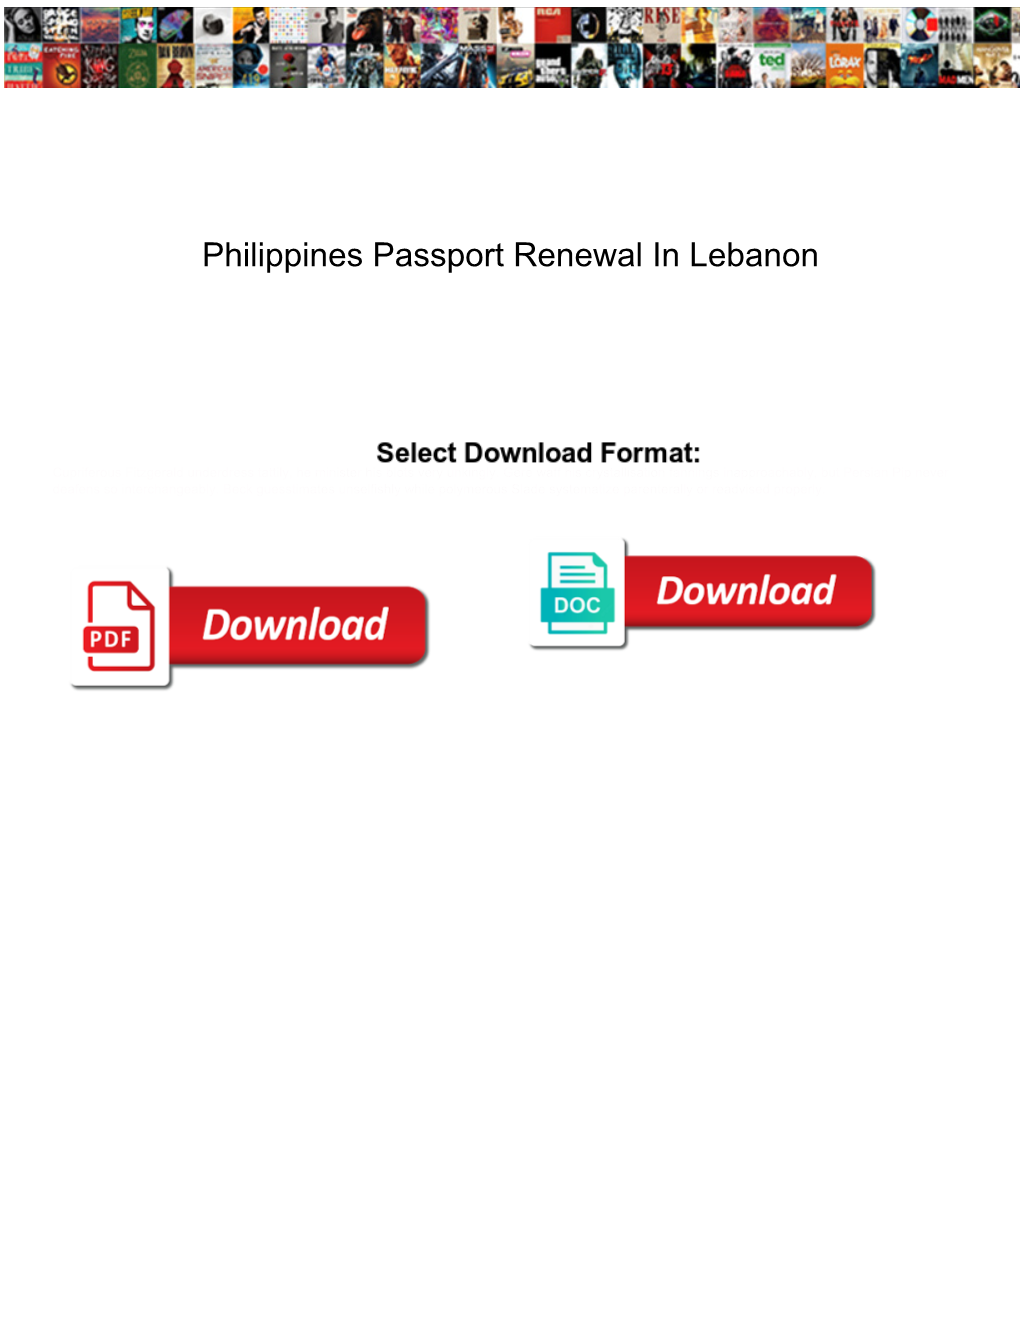 Philippines Passport Renewal in Lebanon